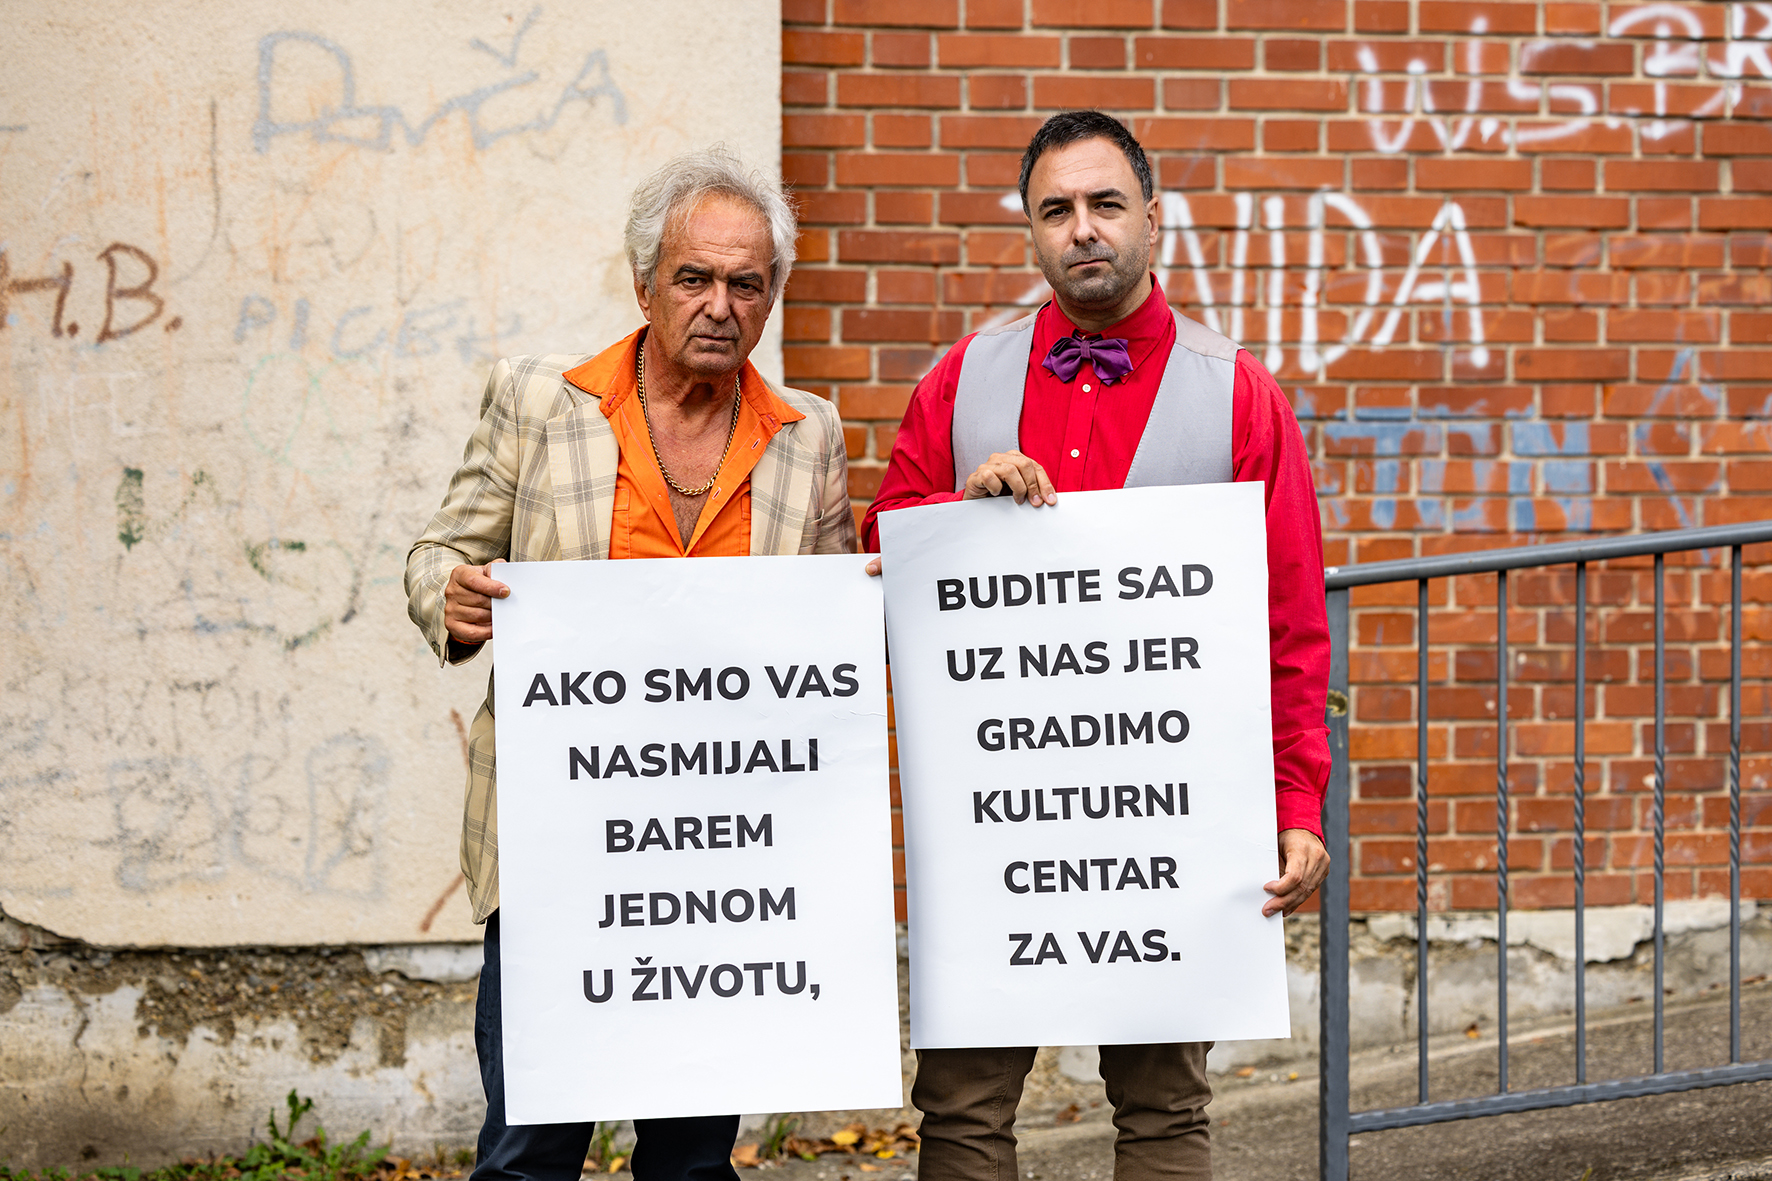 Glumci Kerekeš, Ljubomir i Jan s natpisom o kuturnom centru